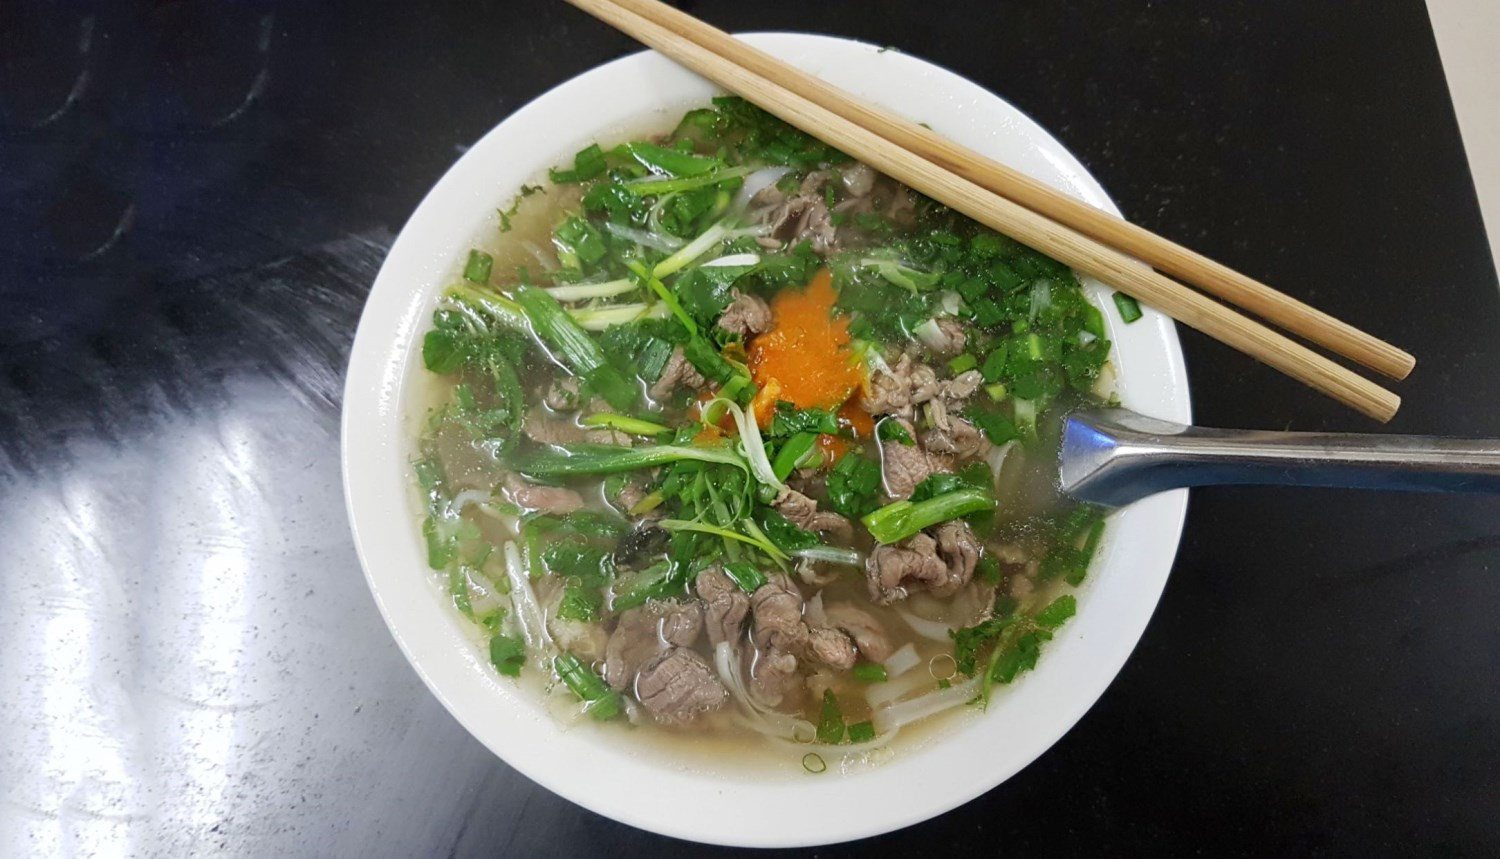 Tân Trang - Phở Bò Gia Truyền Ở Quận Cầu Giấy, Hà Nội | Foody.Vn